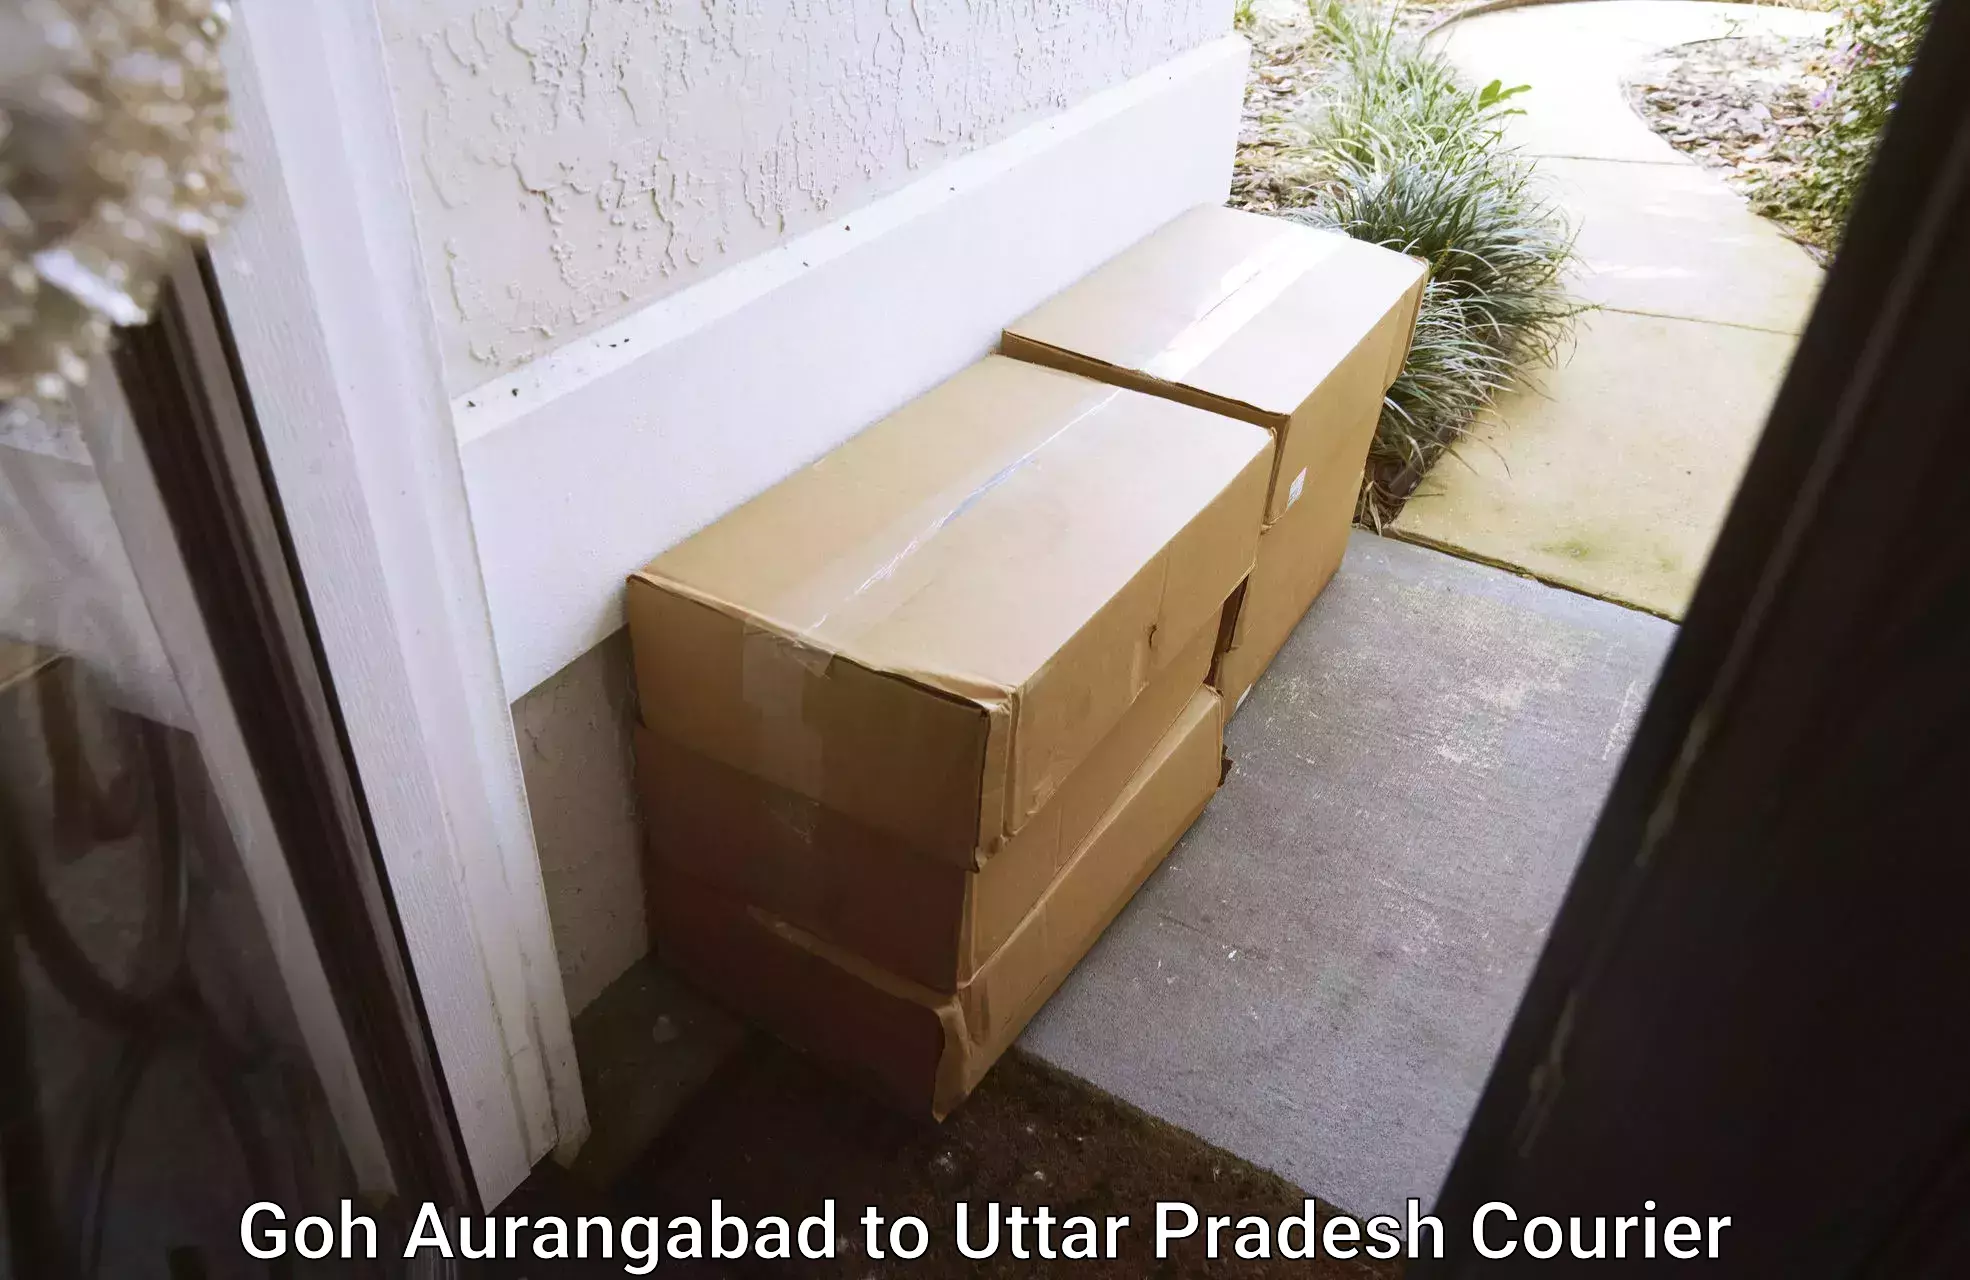 Trusted moving company Goh Aurangabad to Pratapgarh